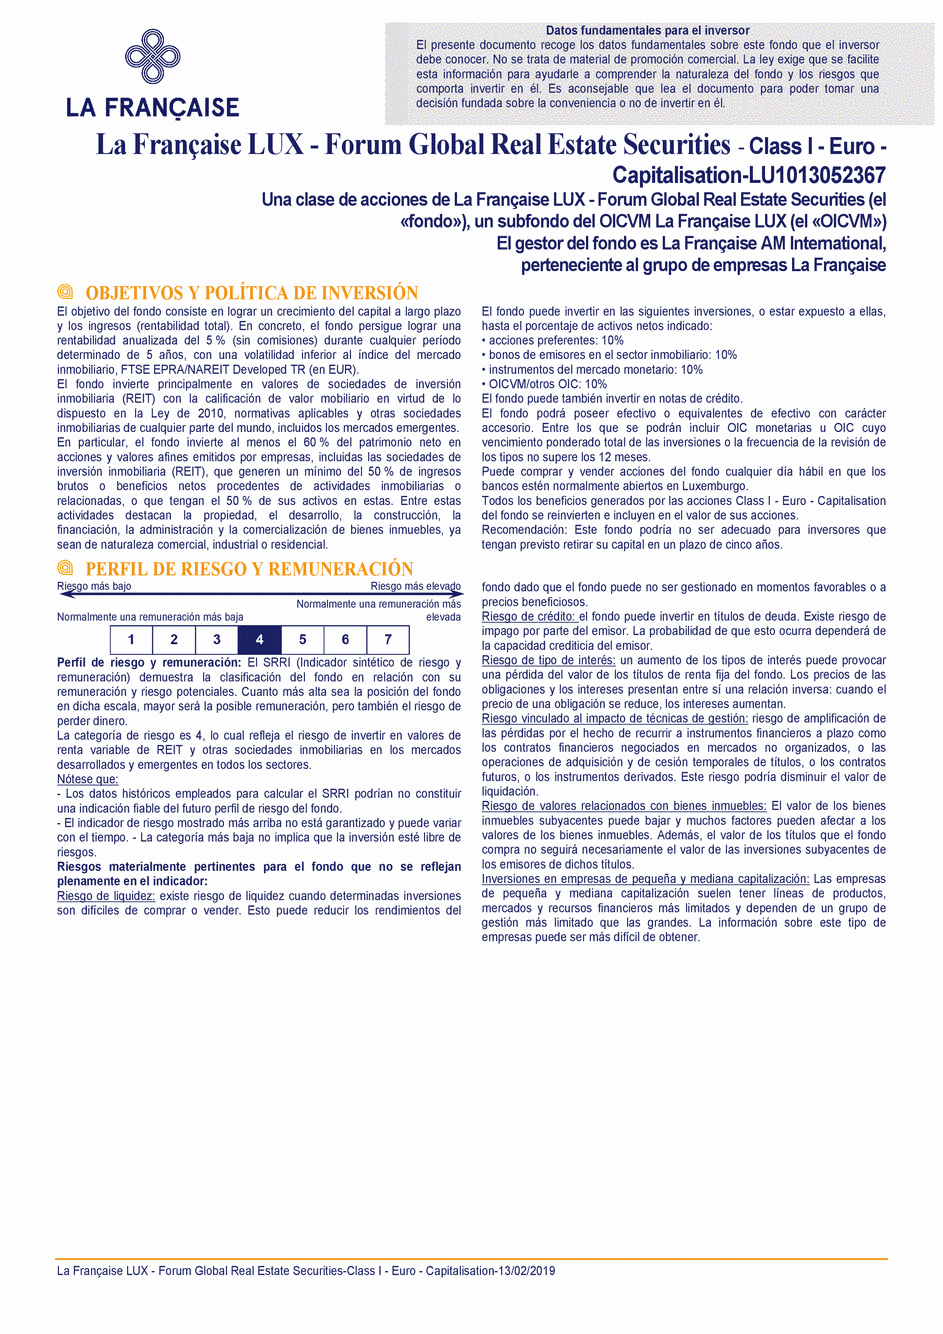 DICI La Française LUX - Forum Global Real Estate Securities - I (C) EUR - 13/02/2019 - Espagnol